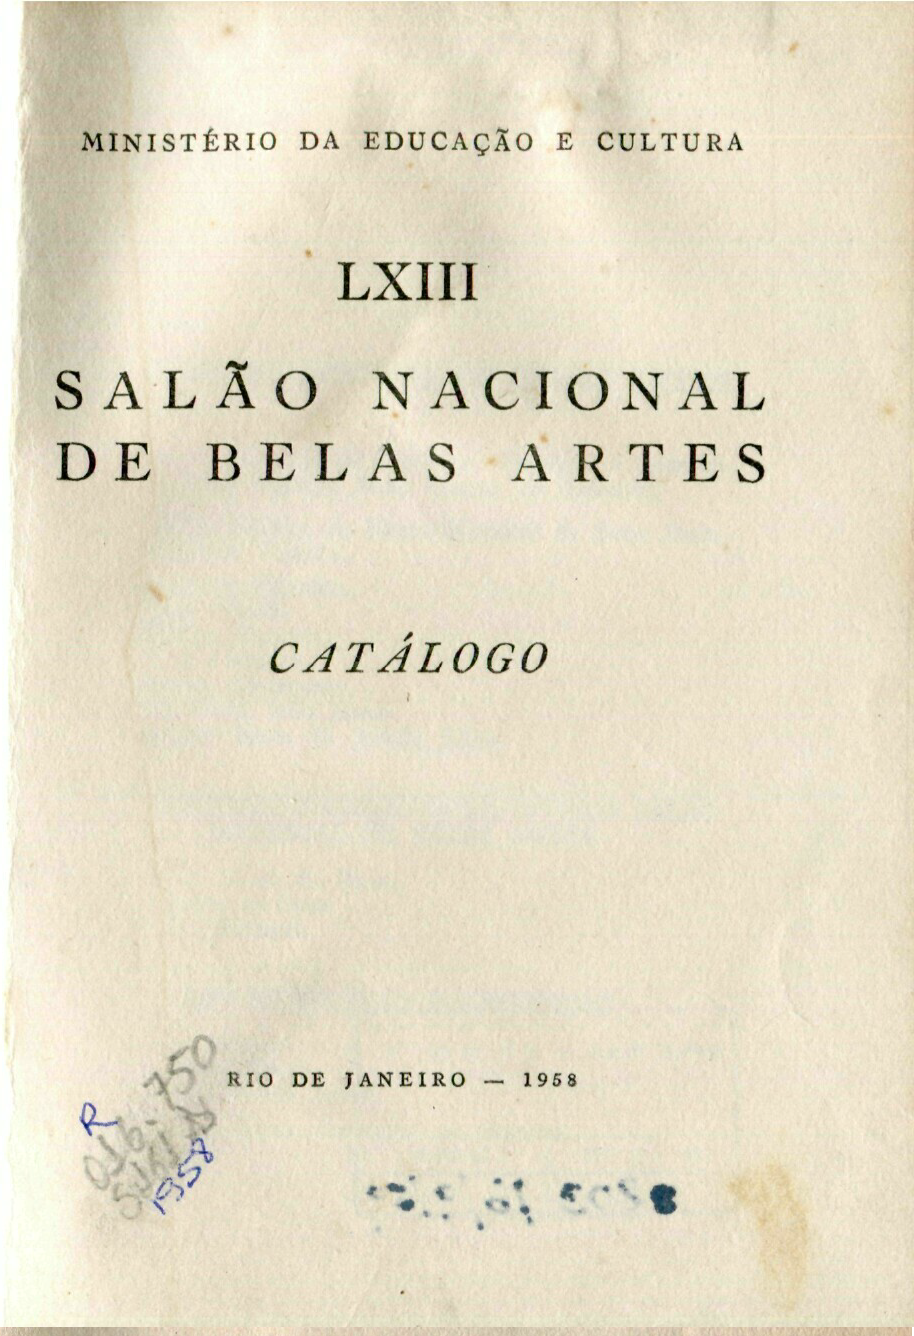 Capa do Livro LXIII Salão Nacional de Belas Artes - Catálogo 1958